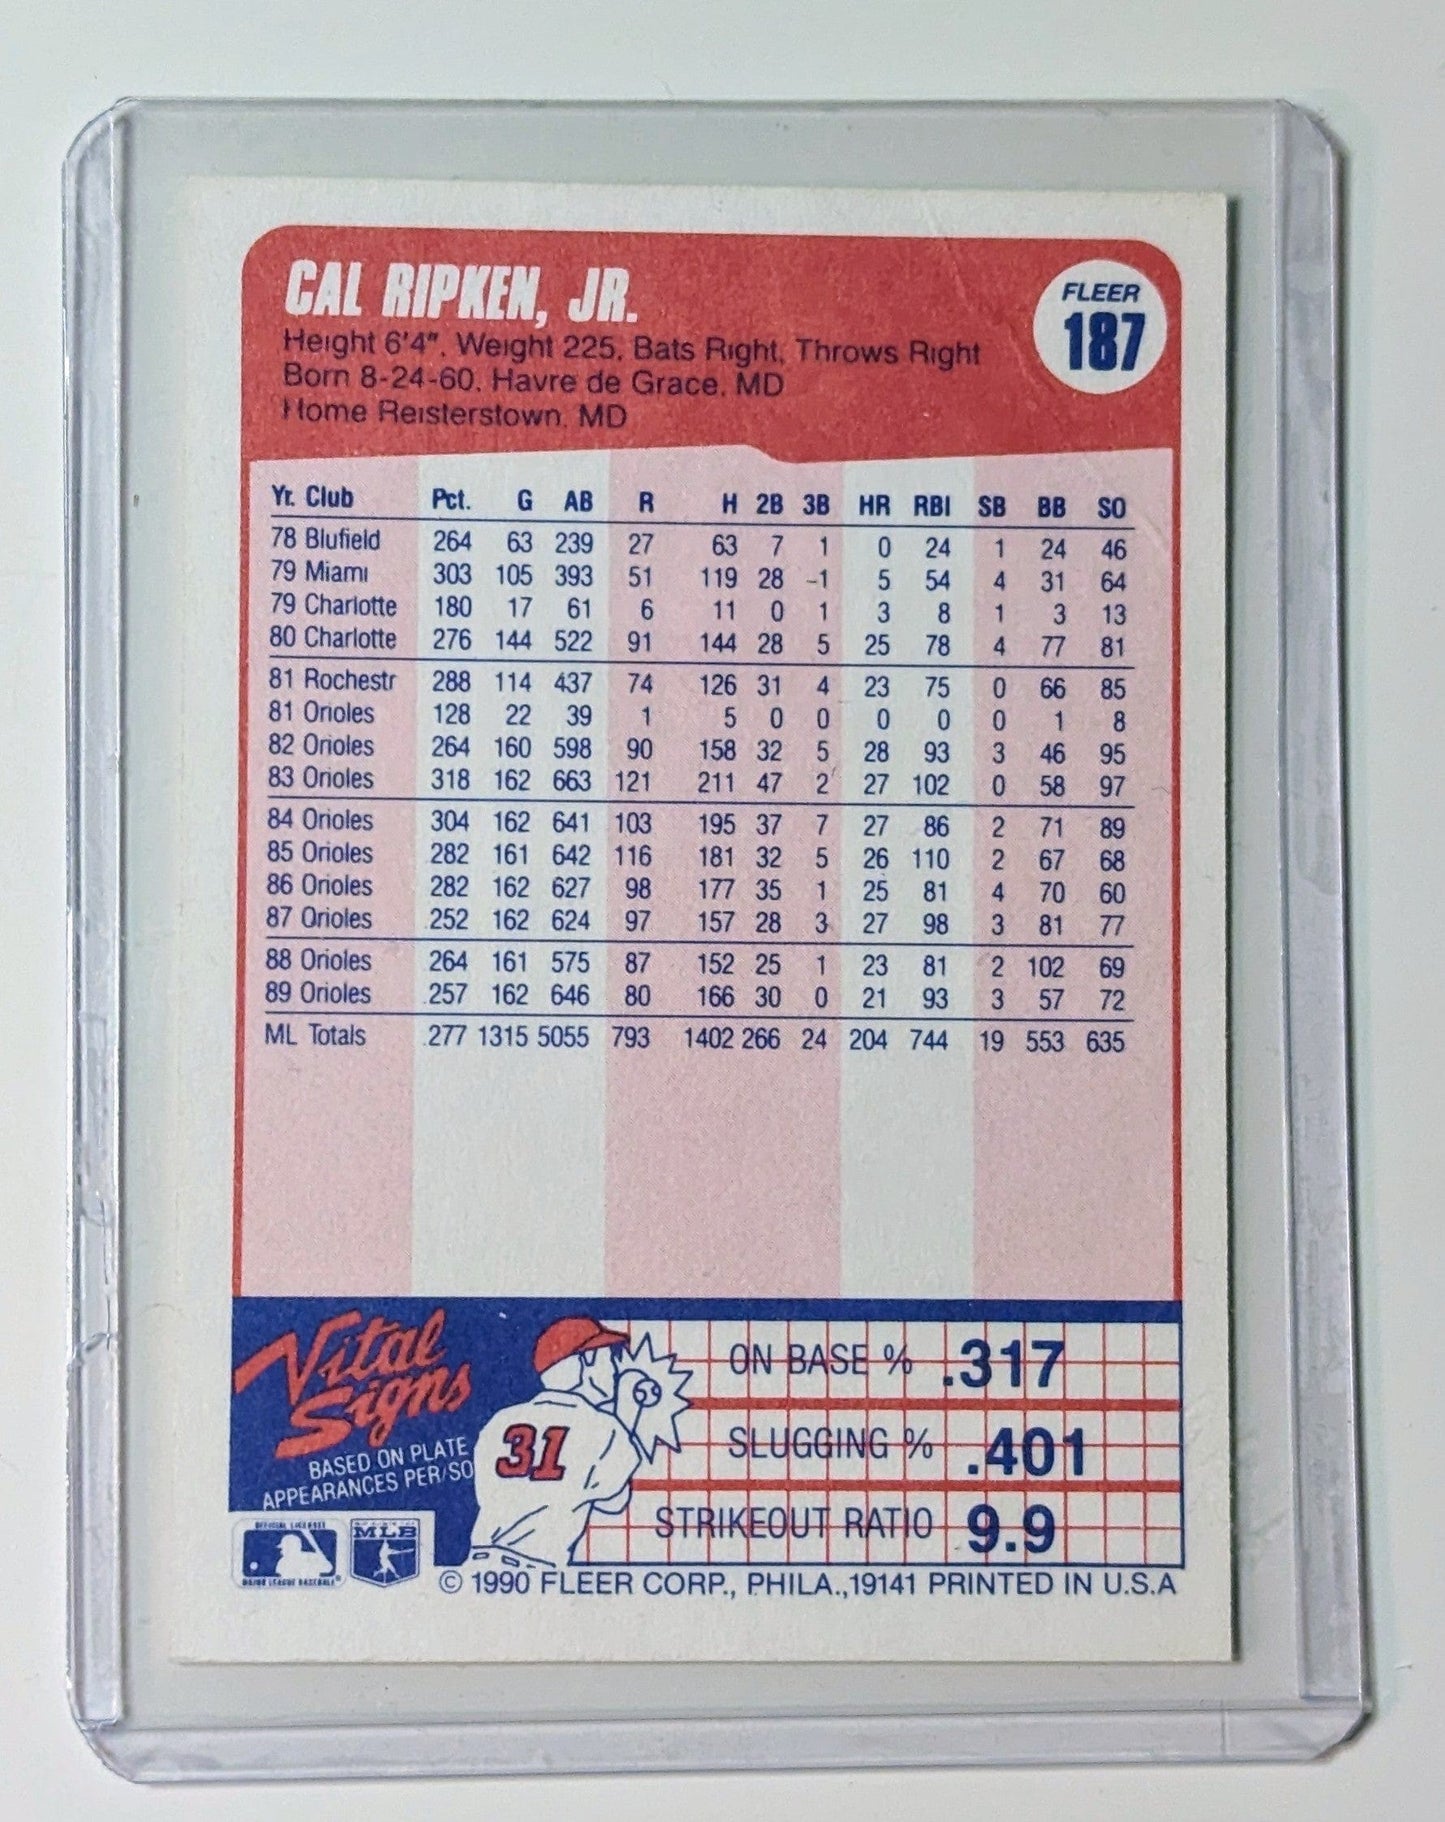 FIINR Baseball Card 1990 Fleer Cal Ripken Jr. MLB Baseball Player Card #187 - Mint Condition